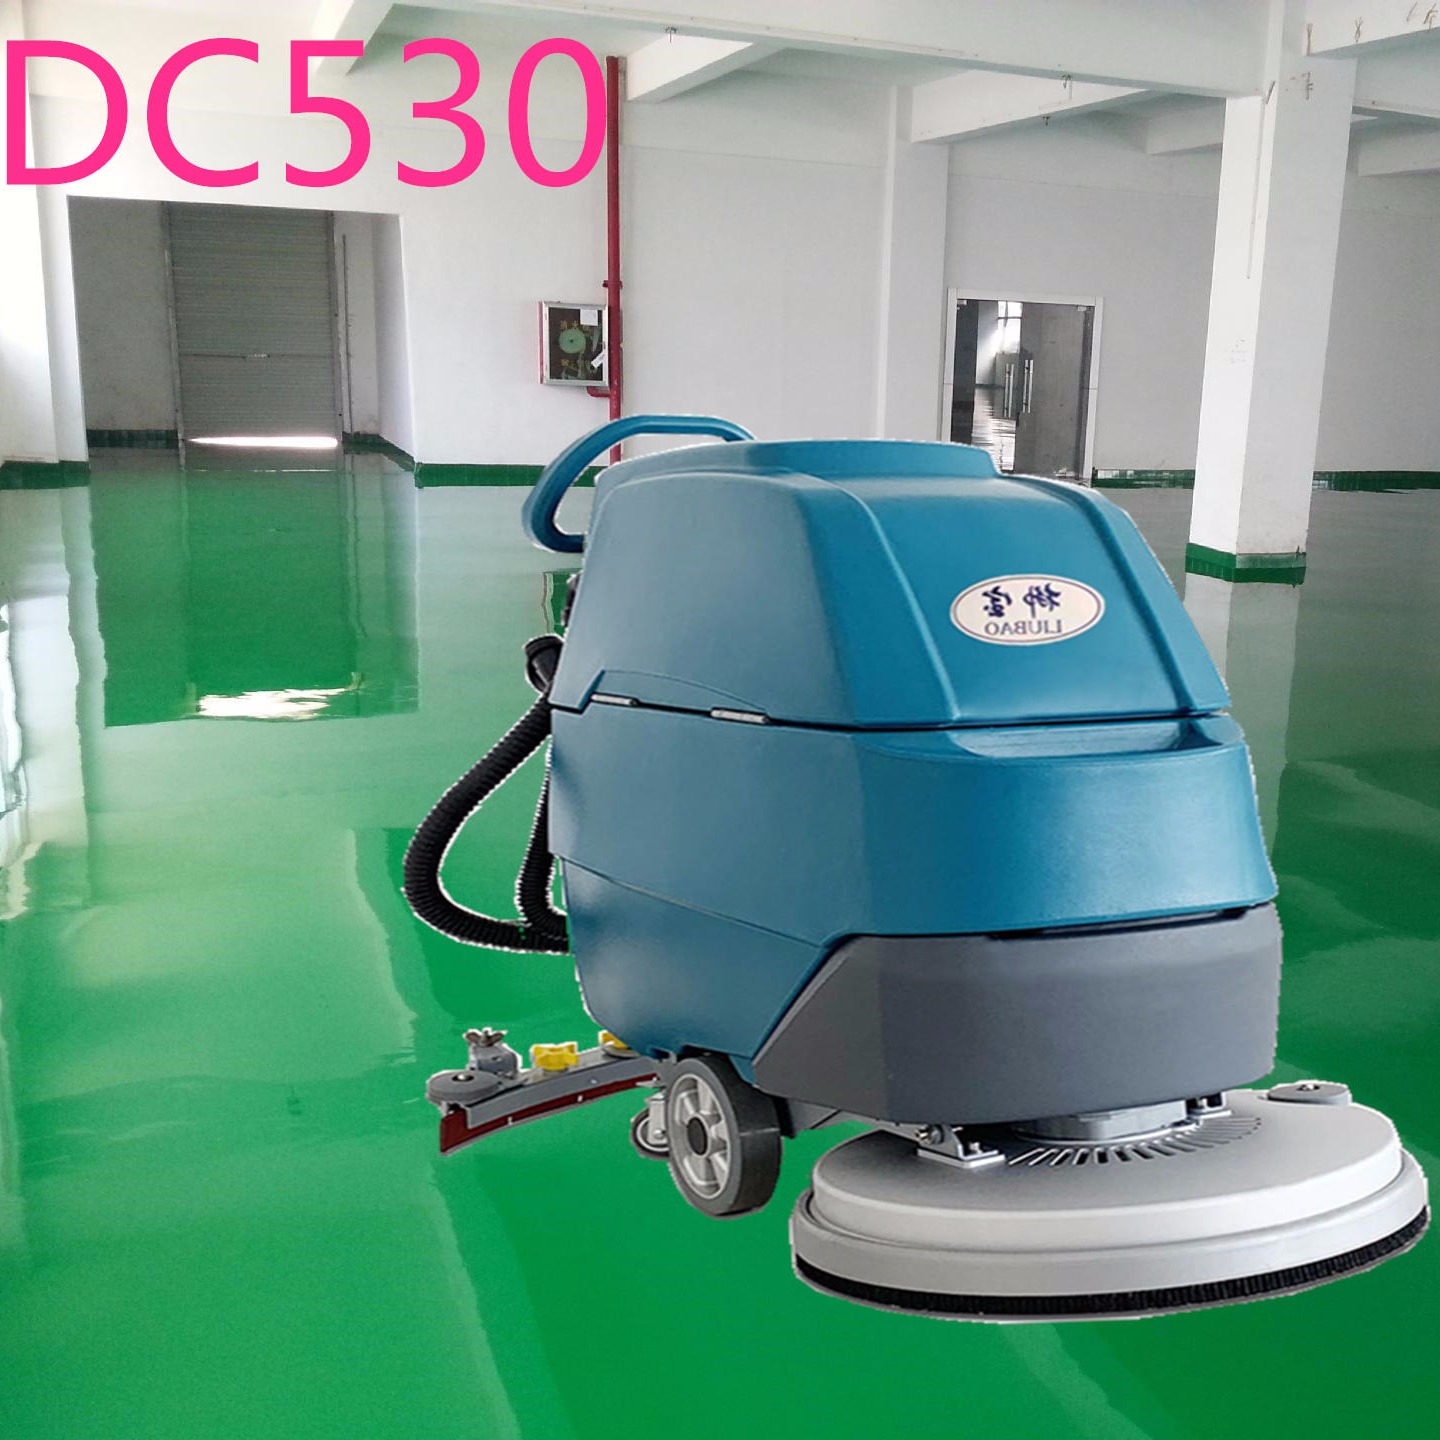 柳宝洗地机手推式自动洗地机LB-DC530 广东洗地机多功能电动洗洗机 广州洗地机医院超市用擦地机。